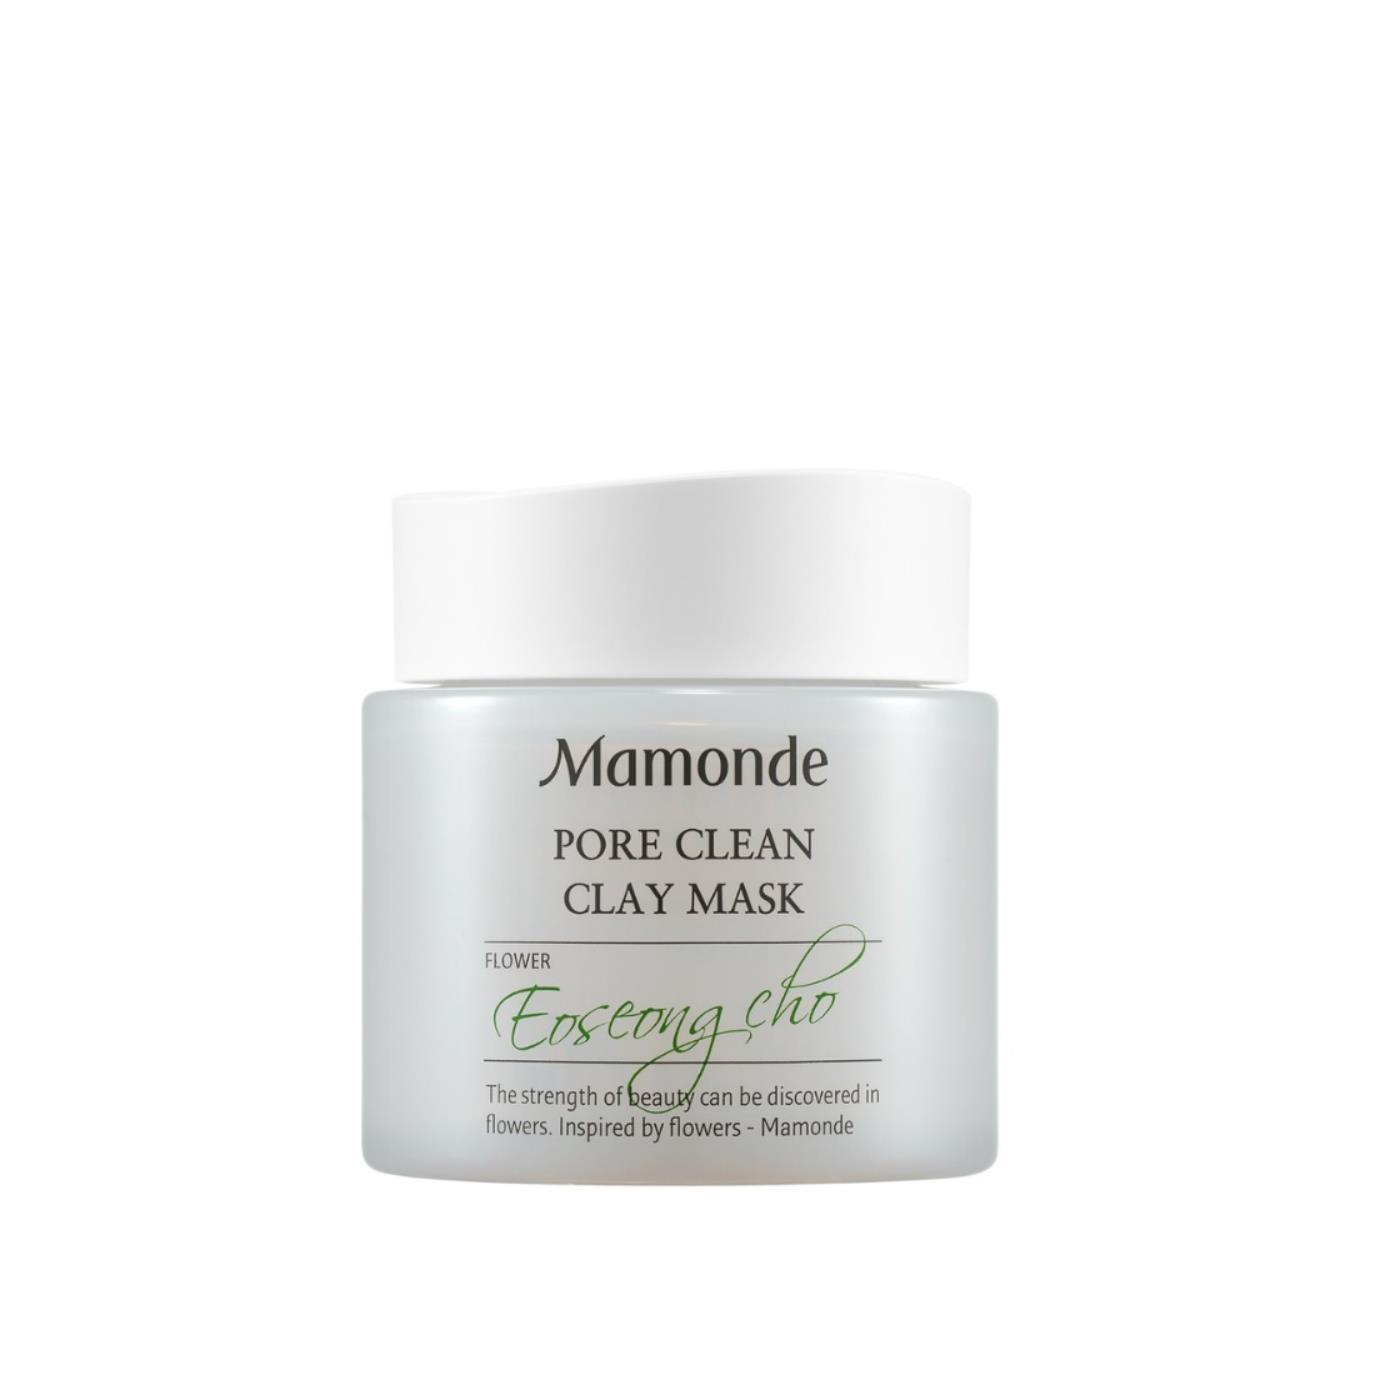 Mamonde pore clean clay mask 100ml